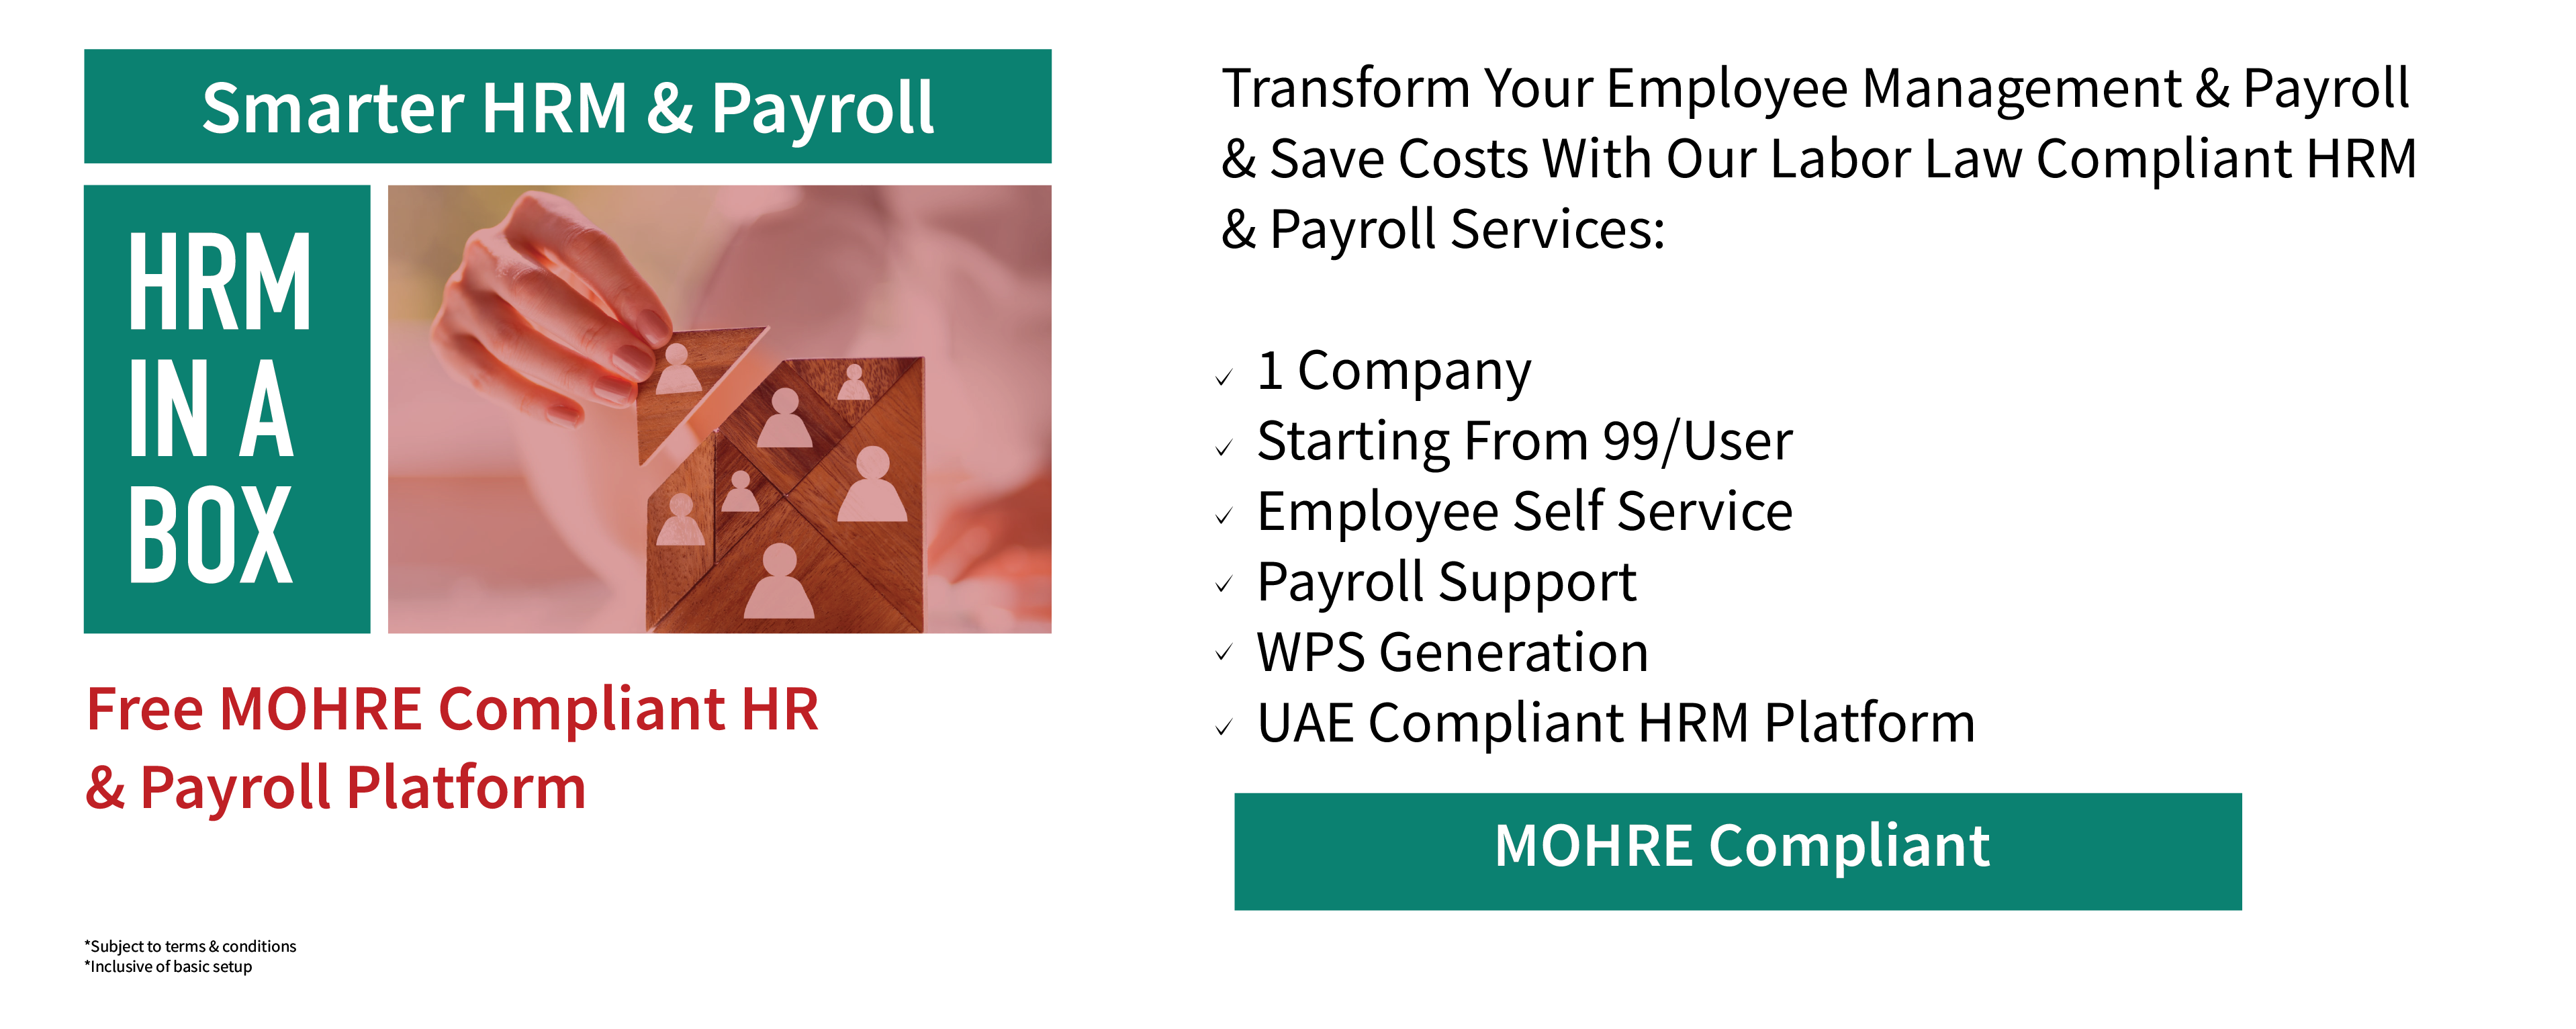 Employee Management & Payroll